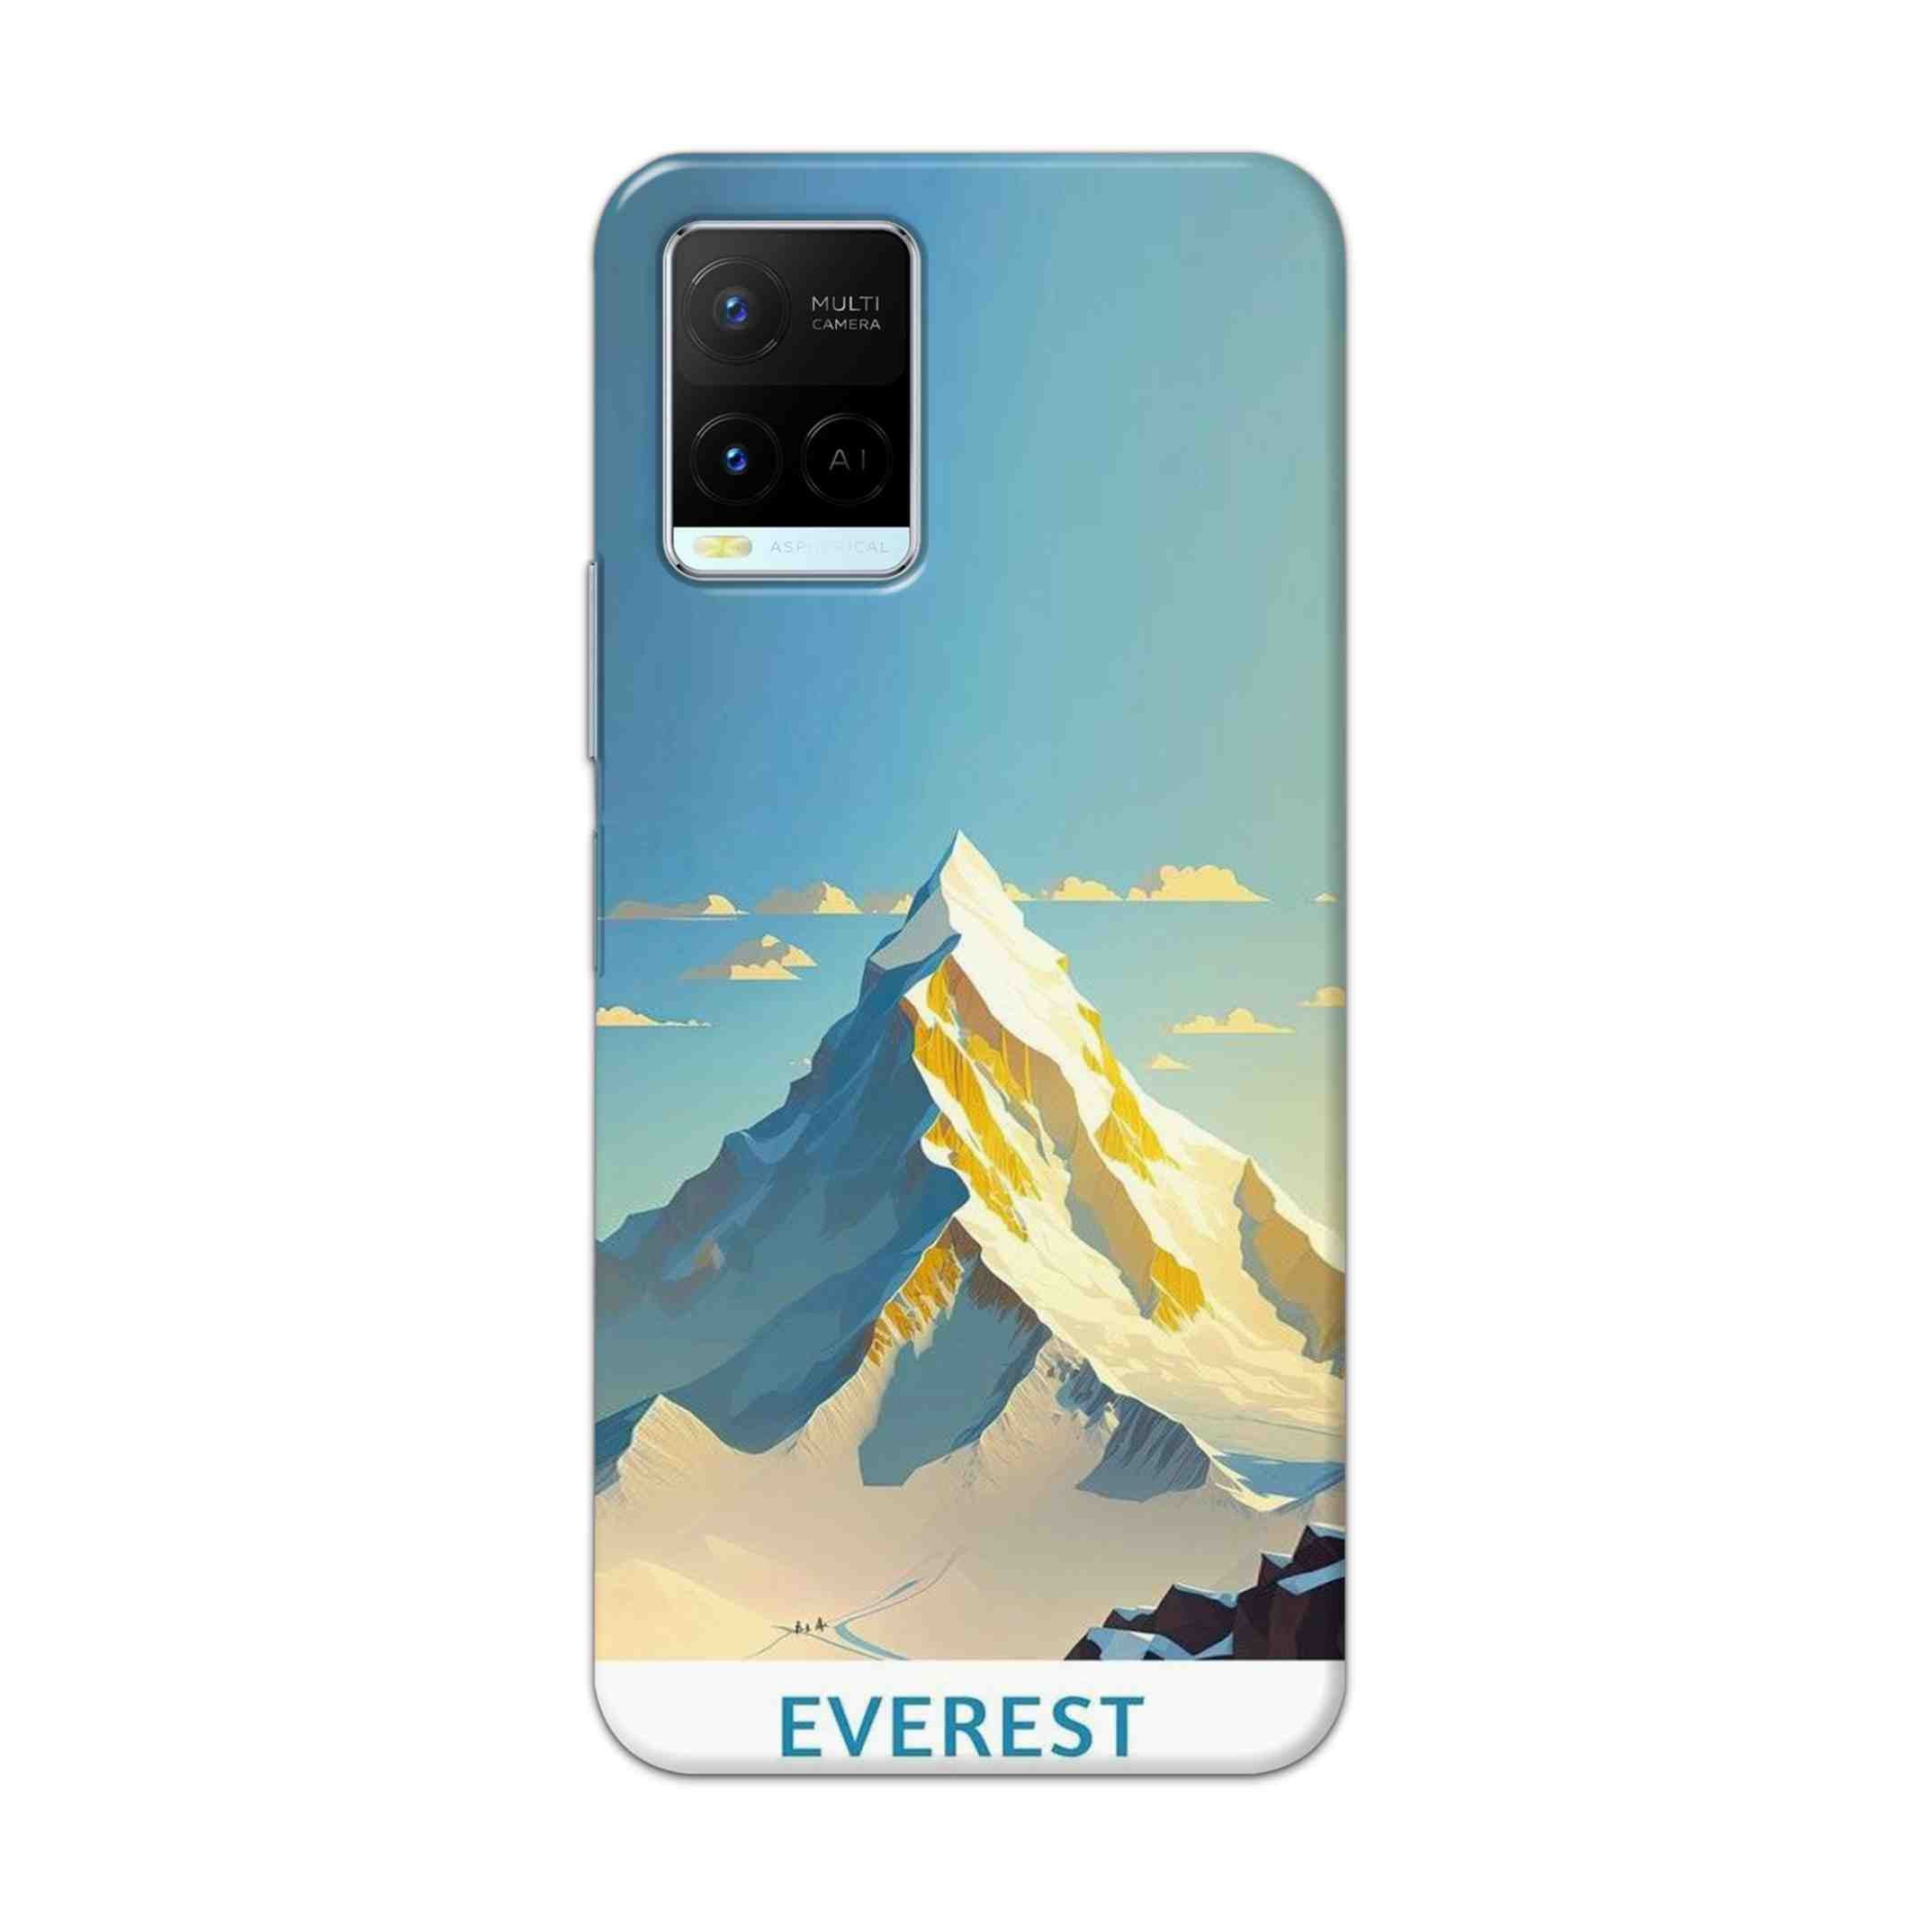 Buy Everest Hard Back Mobile Phone Case Cover For Vivo Y21 2021 Online